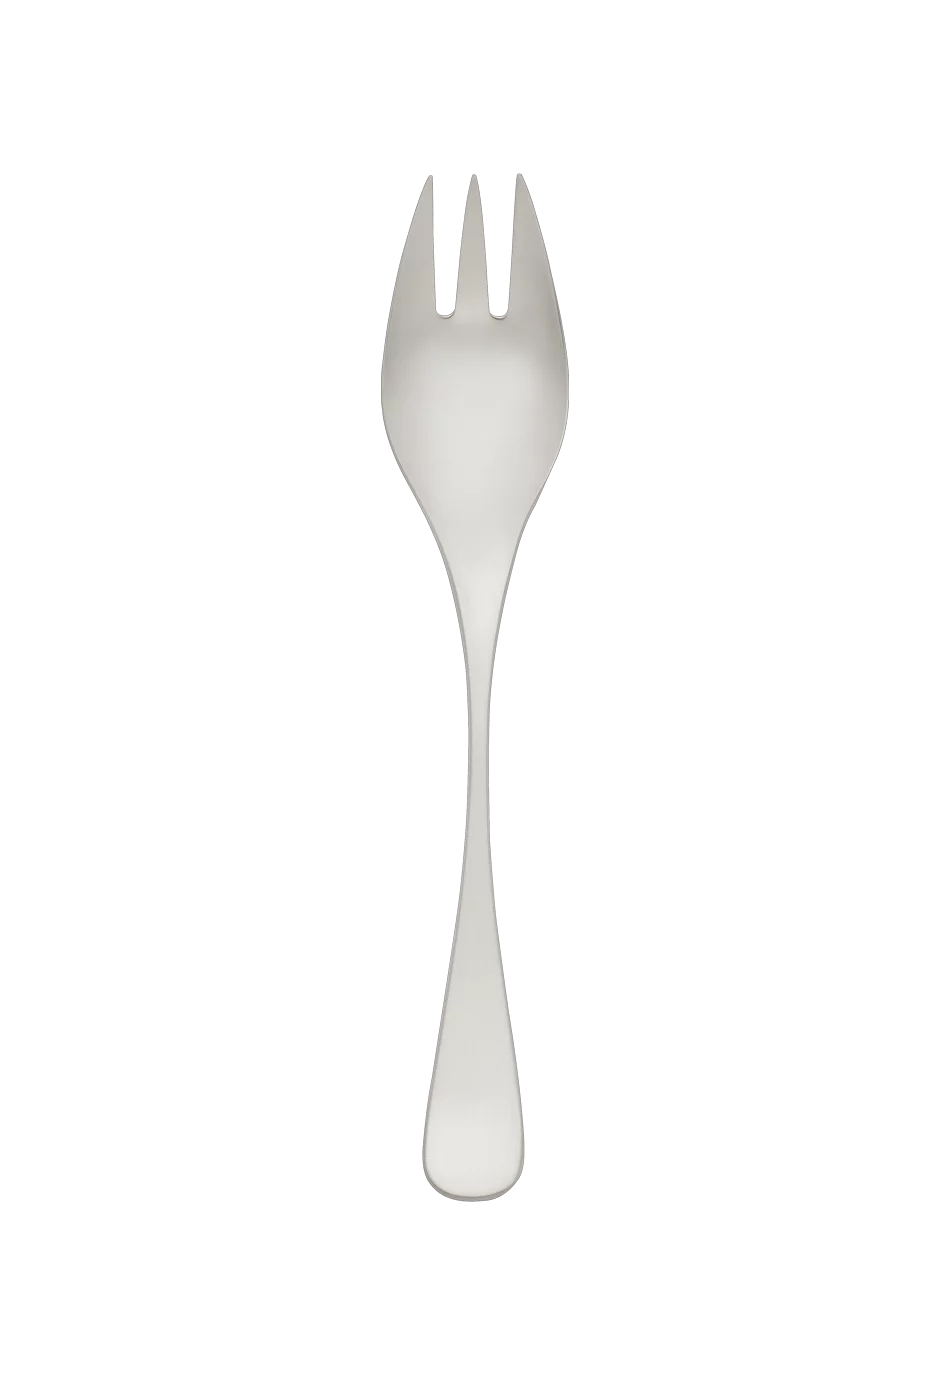 Scandia Vegetable Fork (18/8 stainless steel)